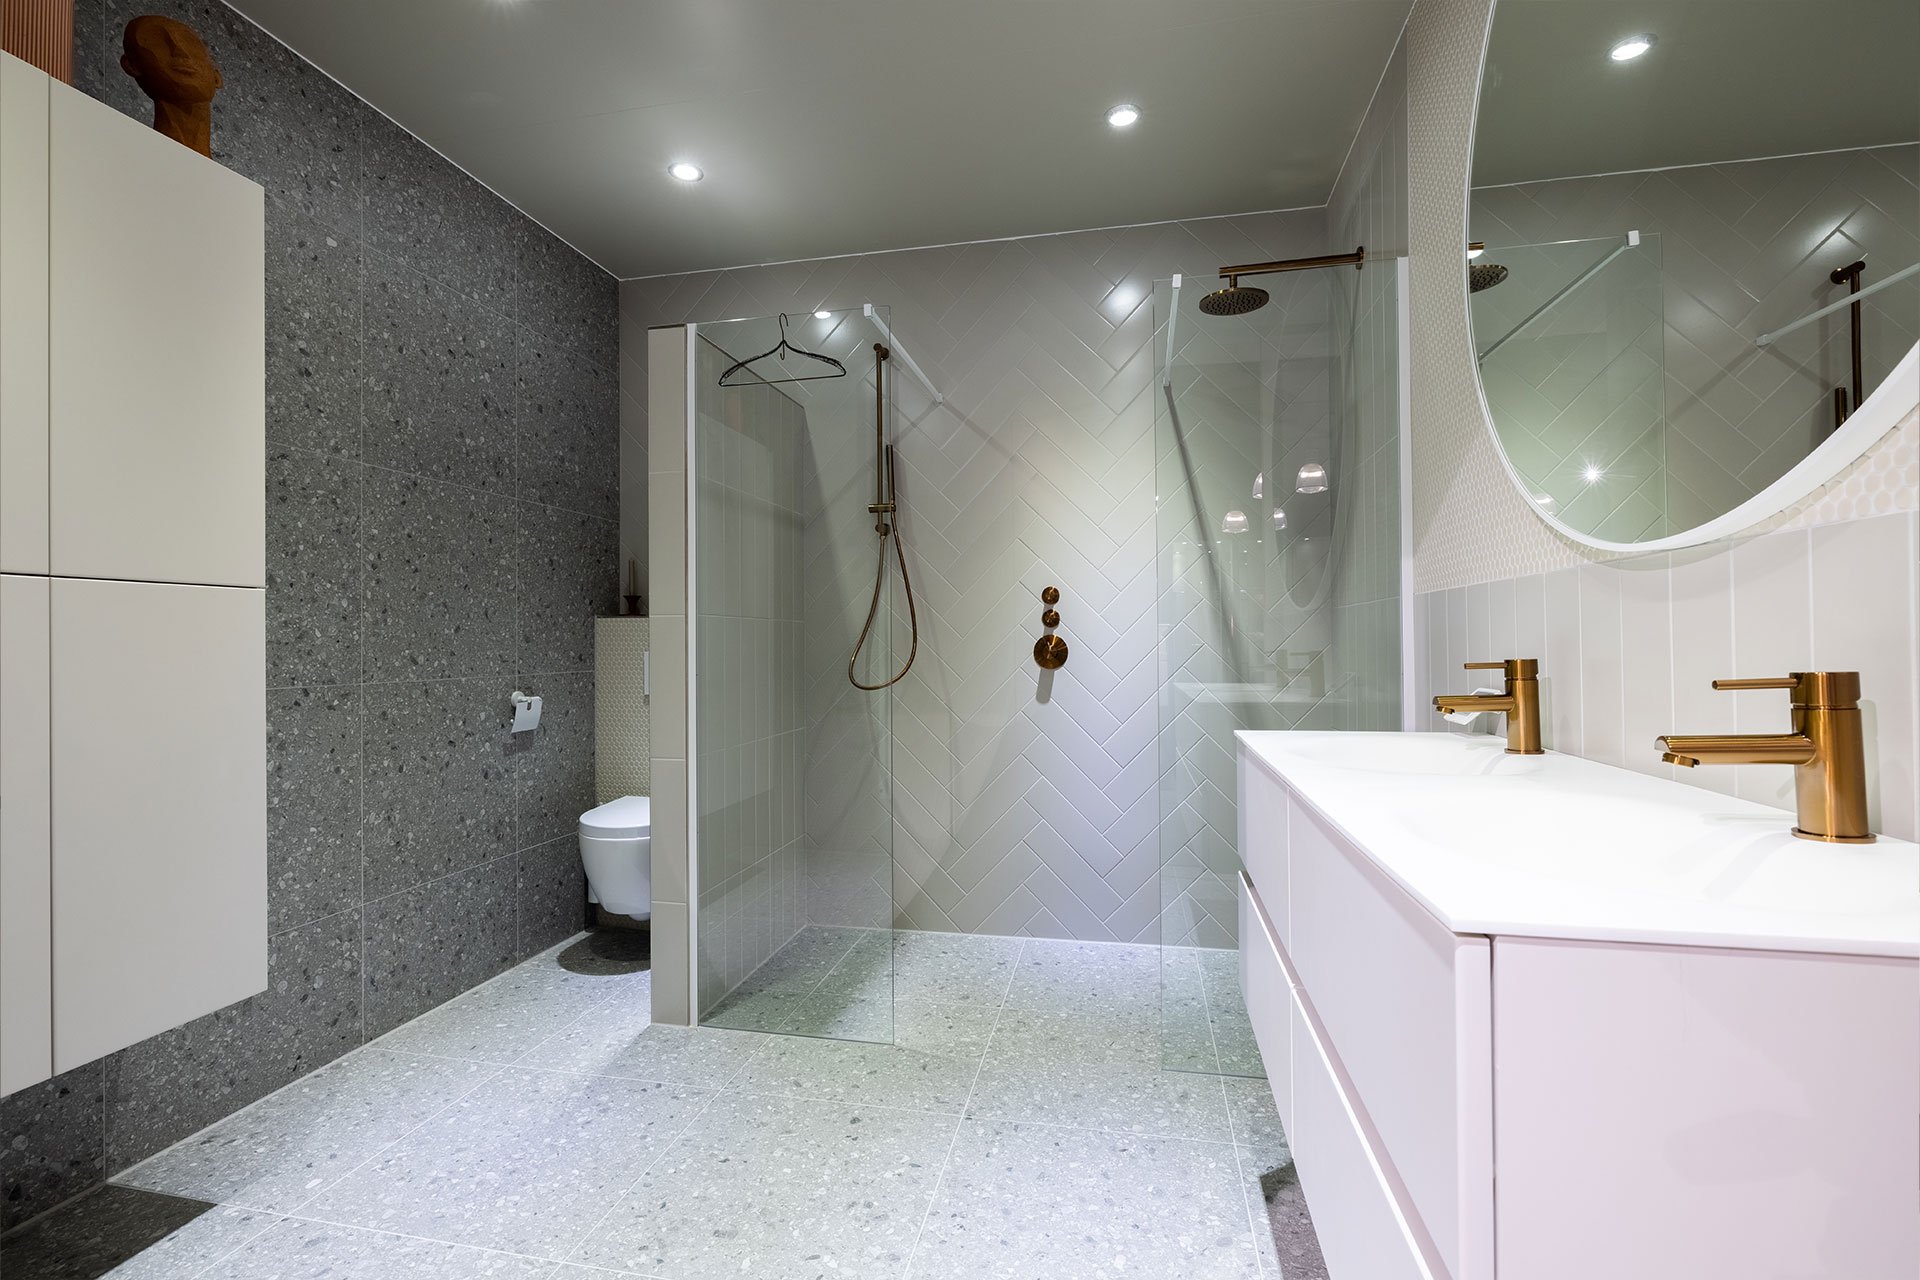 Système de douche à effet pluie Douchette set kit salle de bain repose-savon